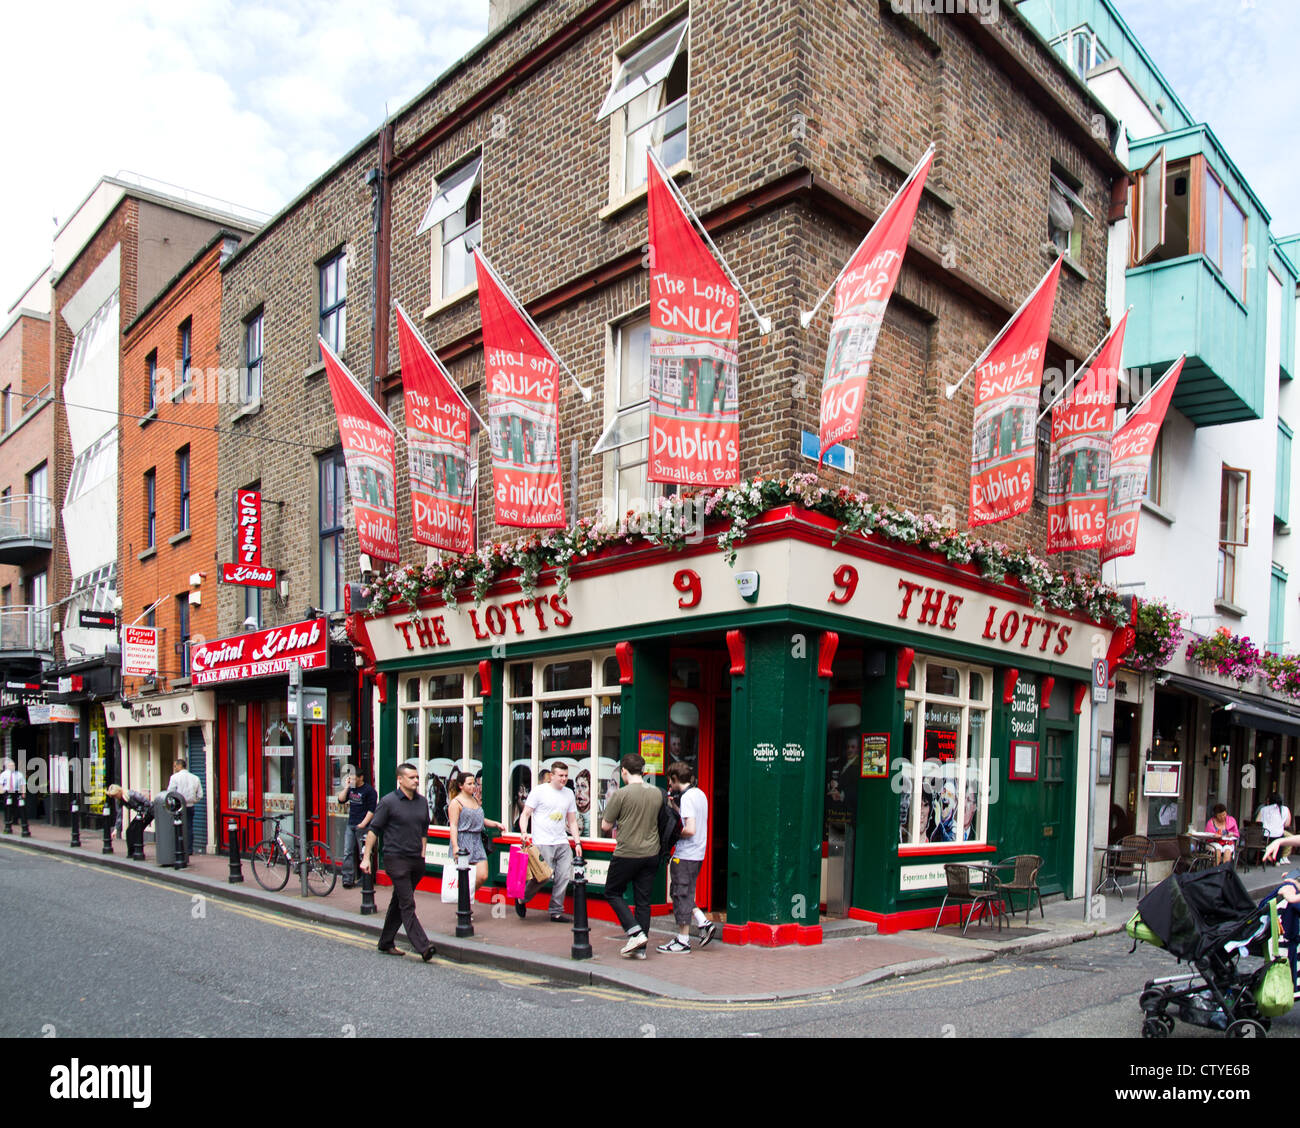 The Lotts Bar, Traditional pub, Dublin, Ireland Stock Photo